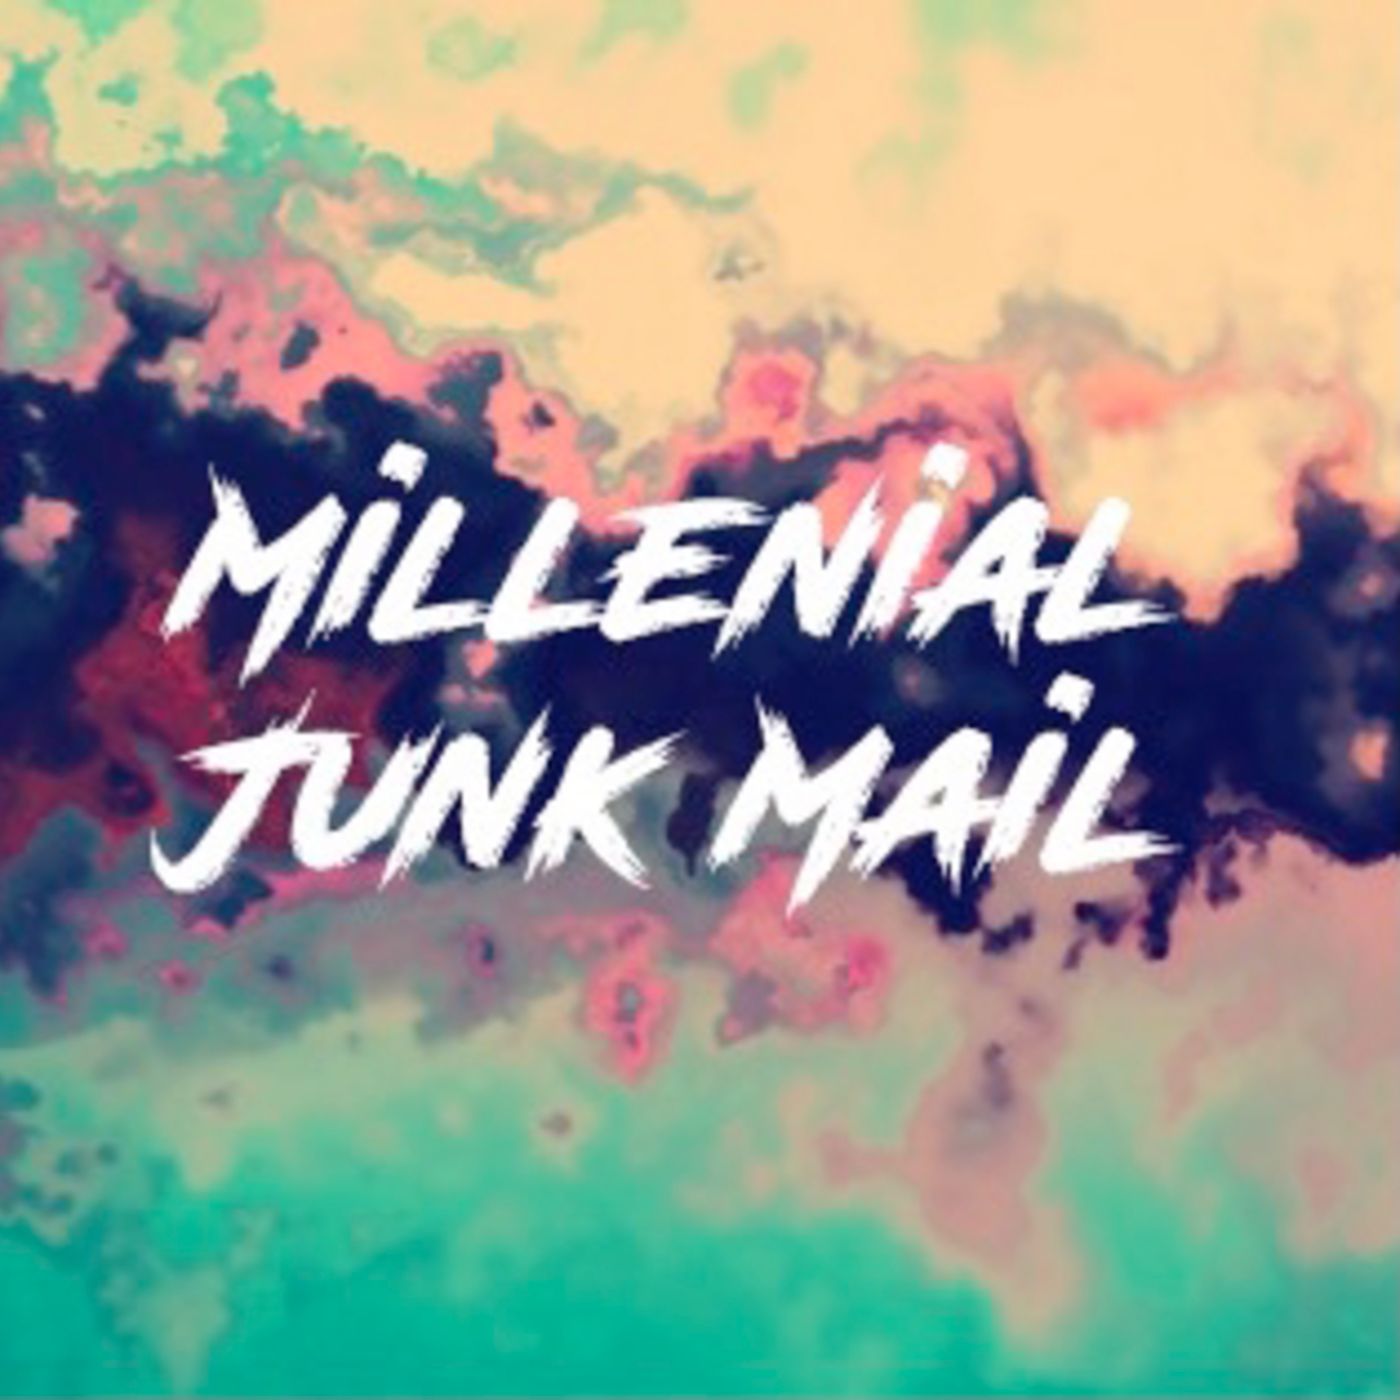 Millenial Junk Mail